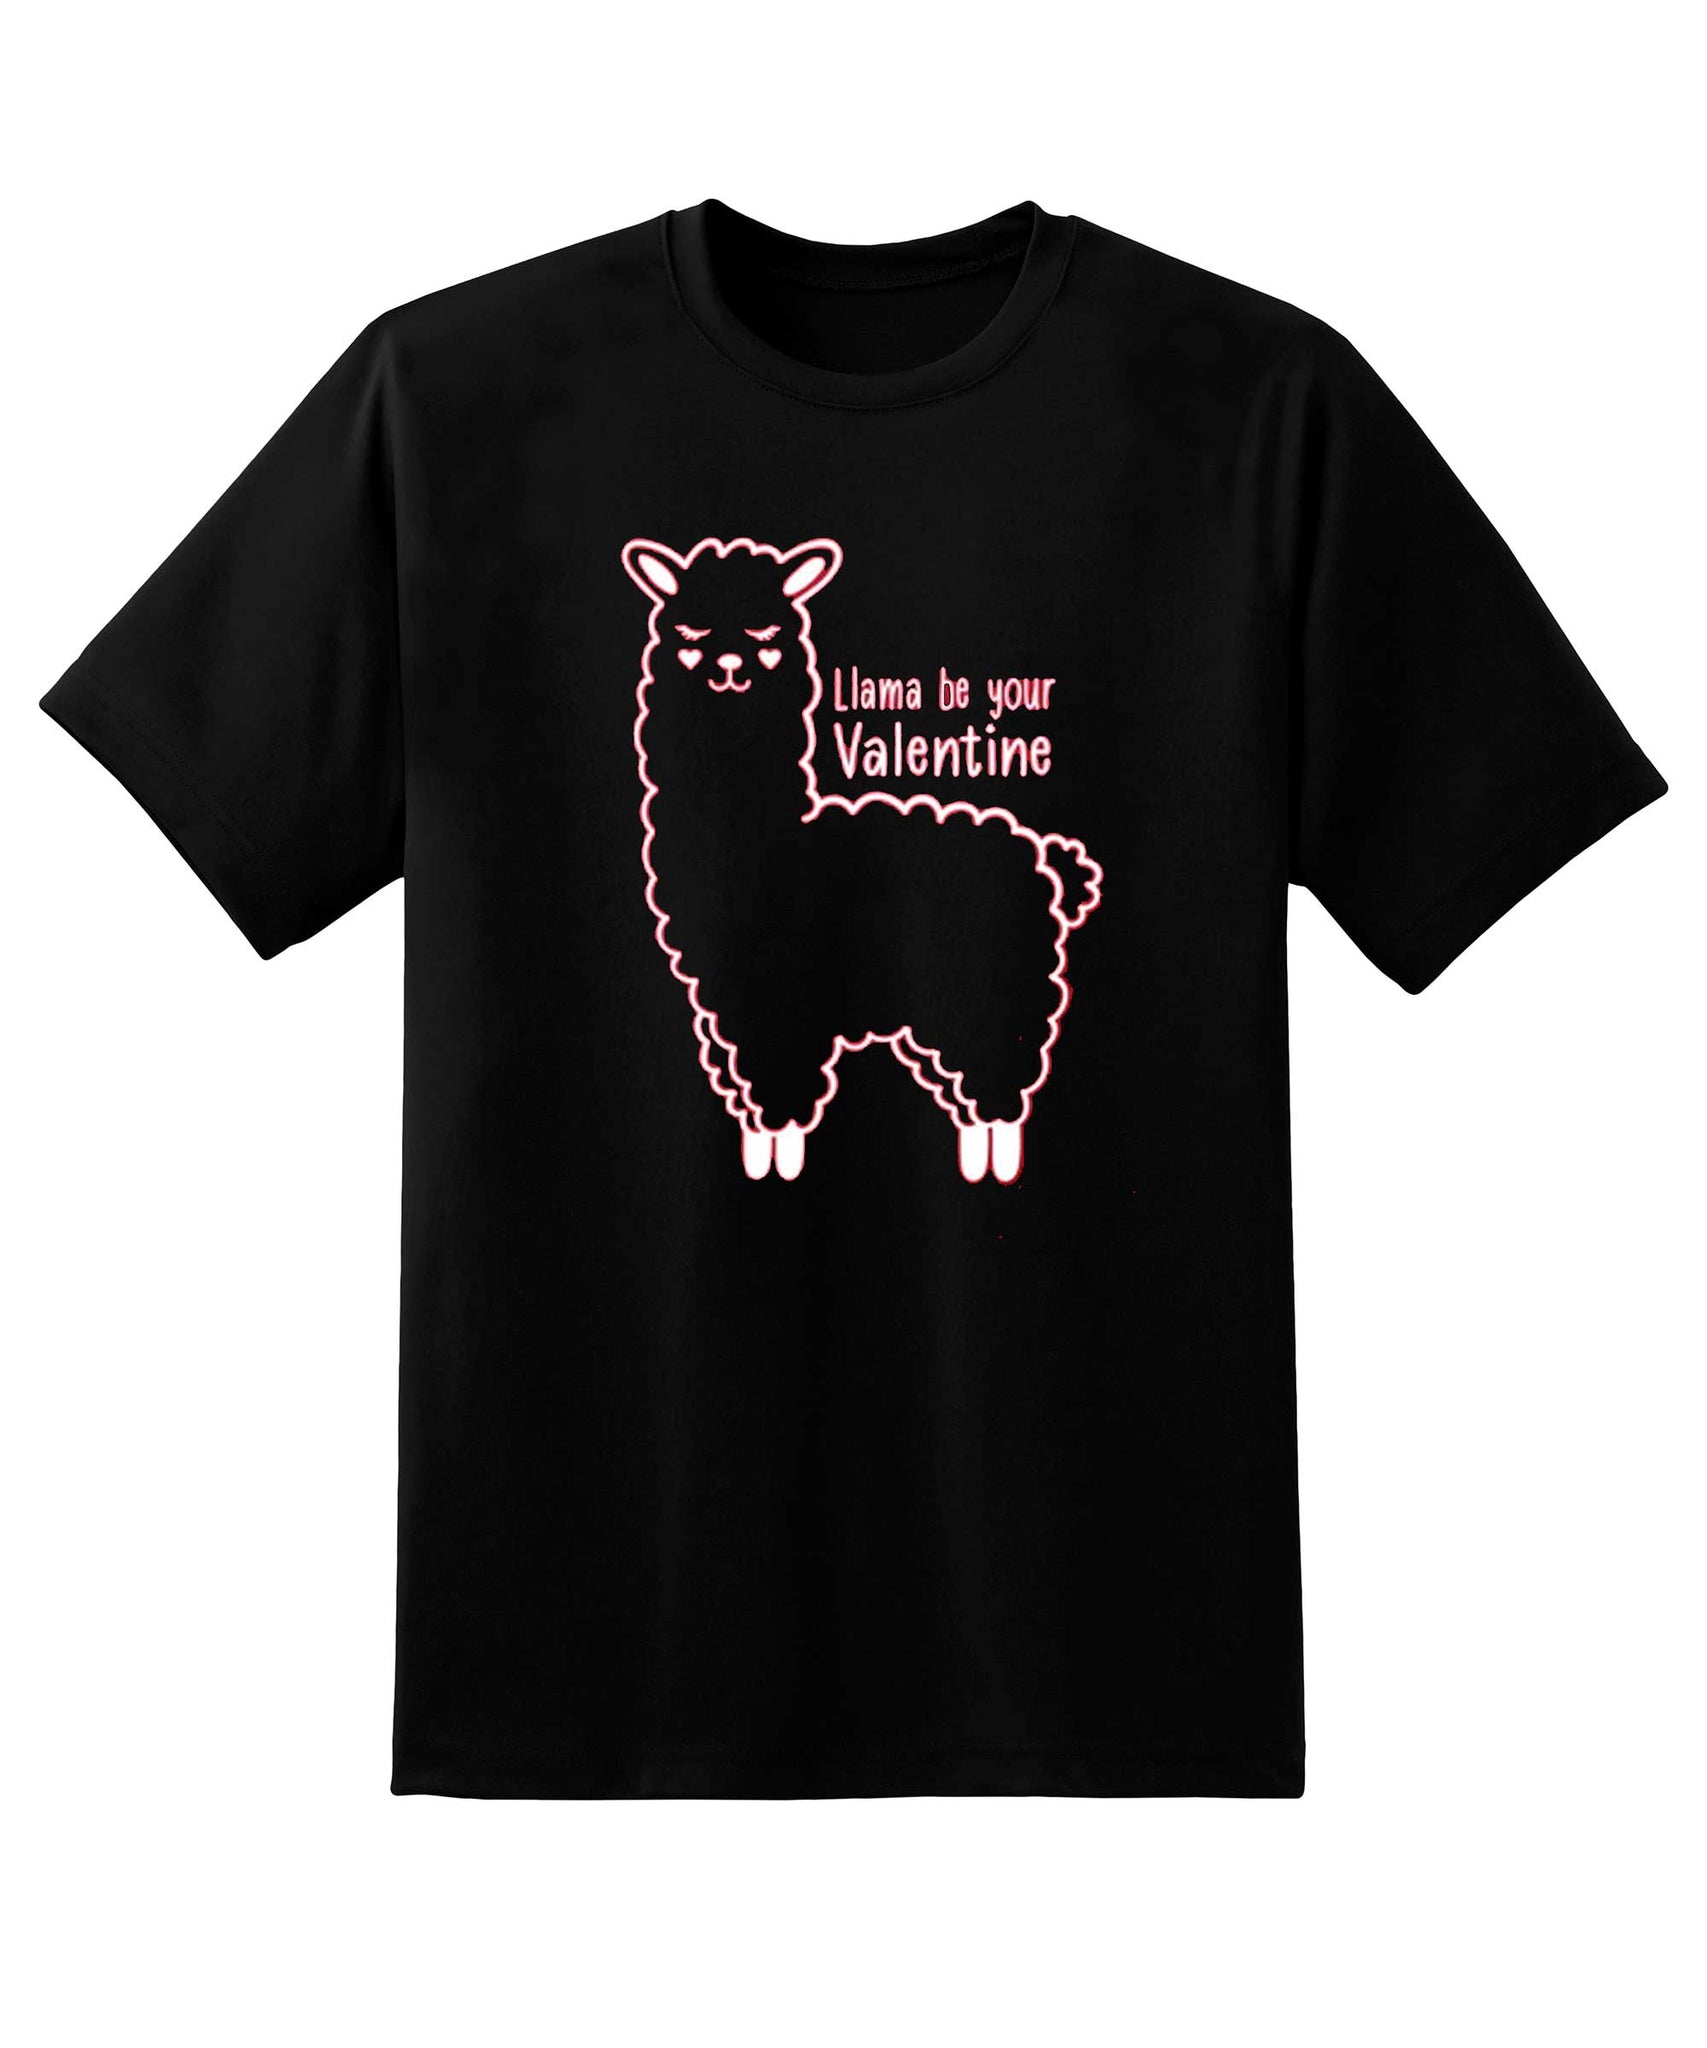 Skitongift Llama Be Your Valentines Day Shirt Valentines Day Shirt Llama Be Your Valentines T Shirt Sarcasm Shirt Funny Shirts